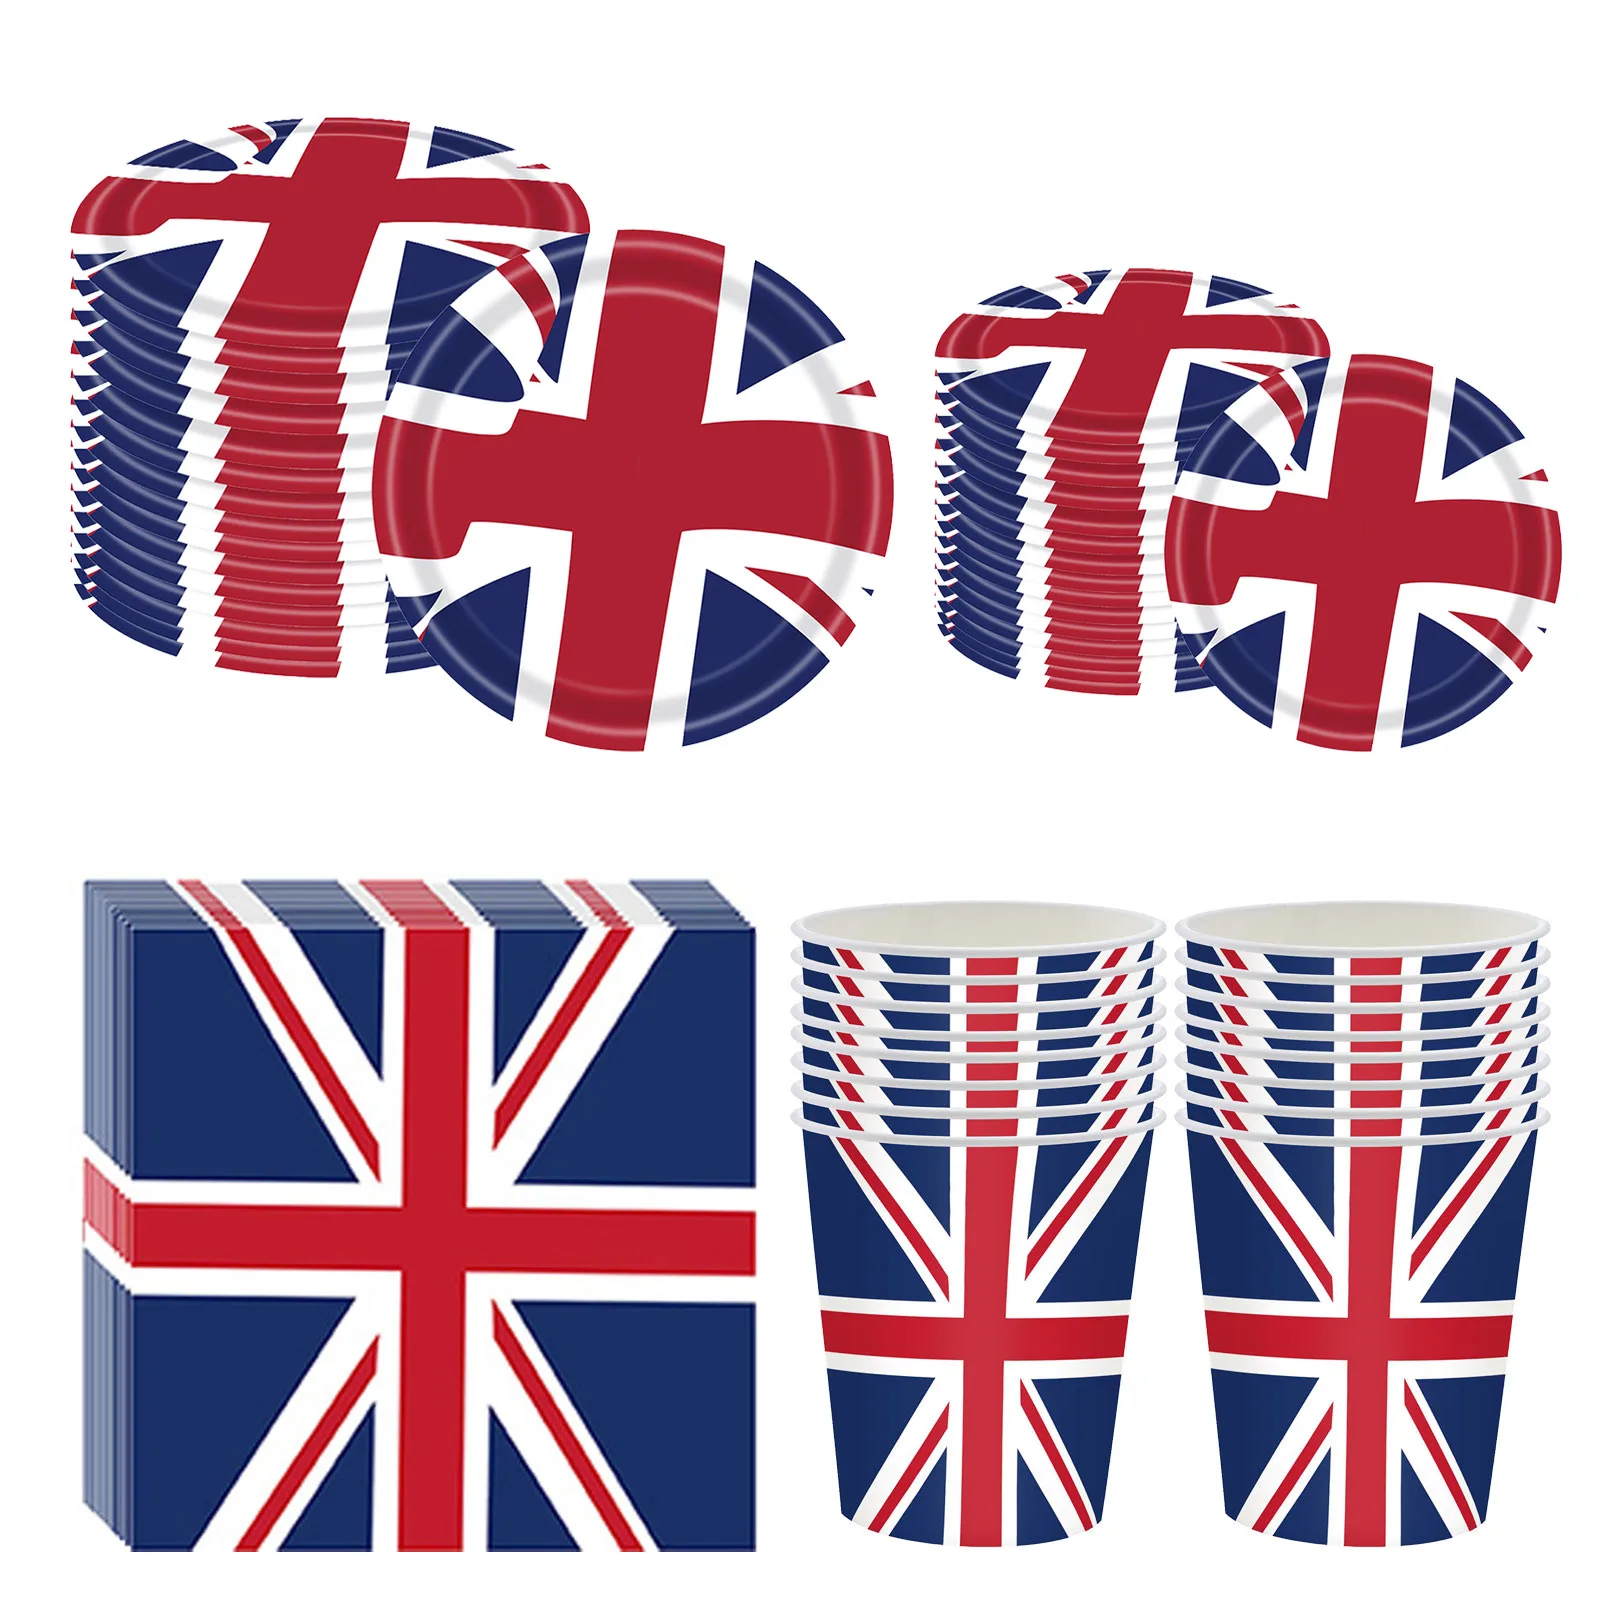 

68 шт., столовая посуда с британским флагом, британский флаг, в том числе 16 чашек, 20 салфеток и 32 тарелки, Королевский юбилей